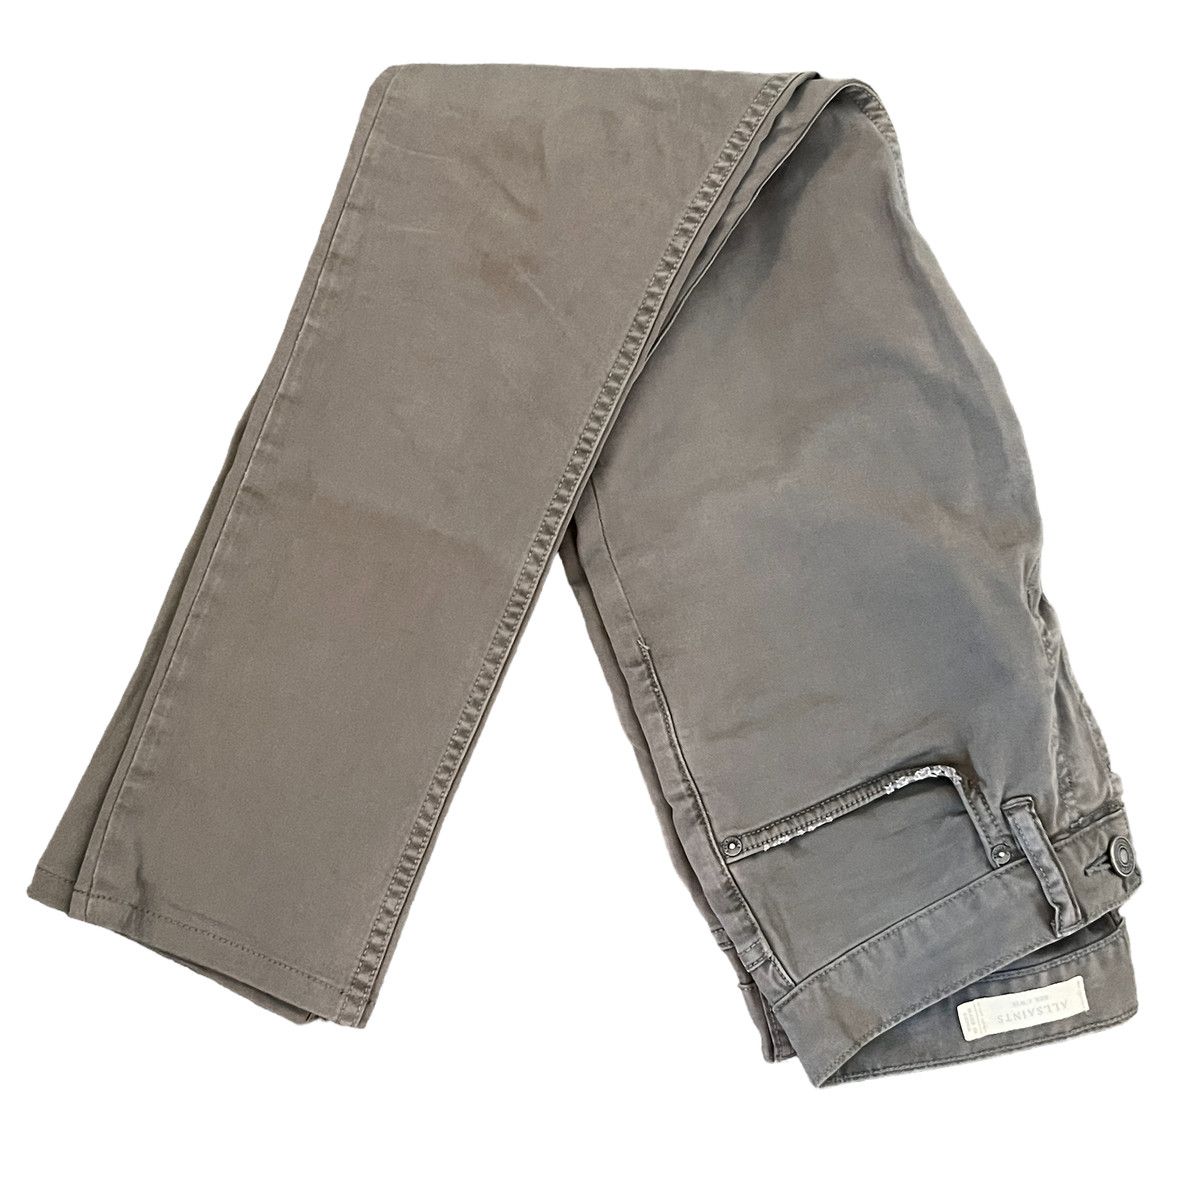 Allsaints AllSaints Size 28 Slate Gray Cotton Jeans Button Fly Size US 28 / EU 44 - 2 Preview